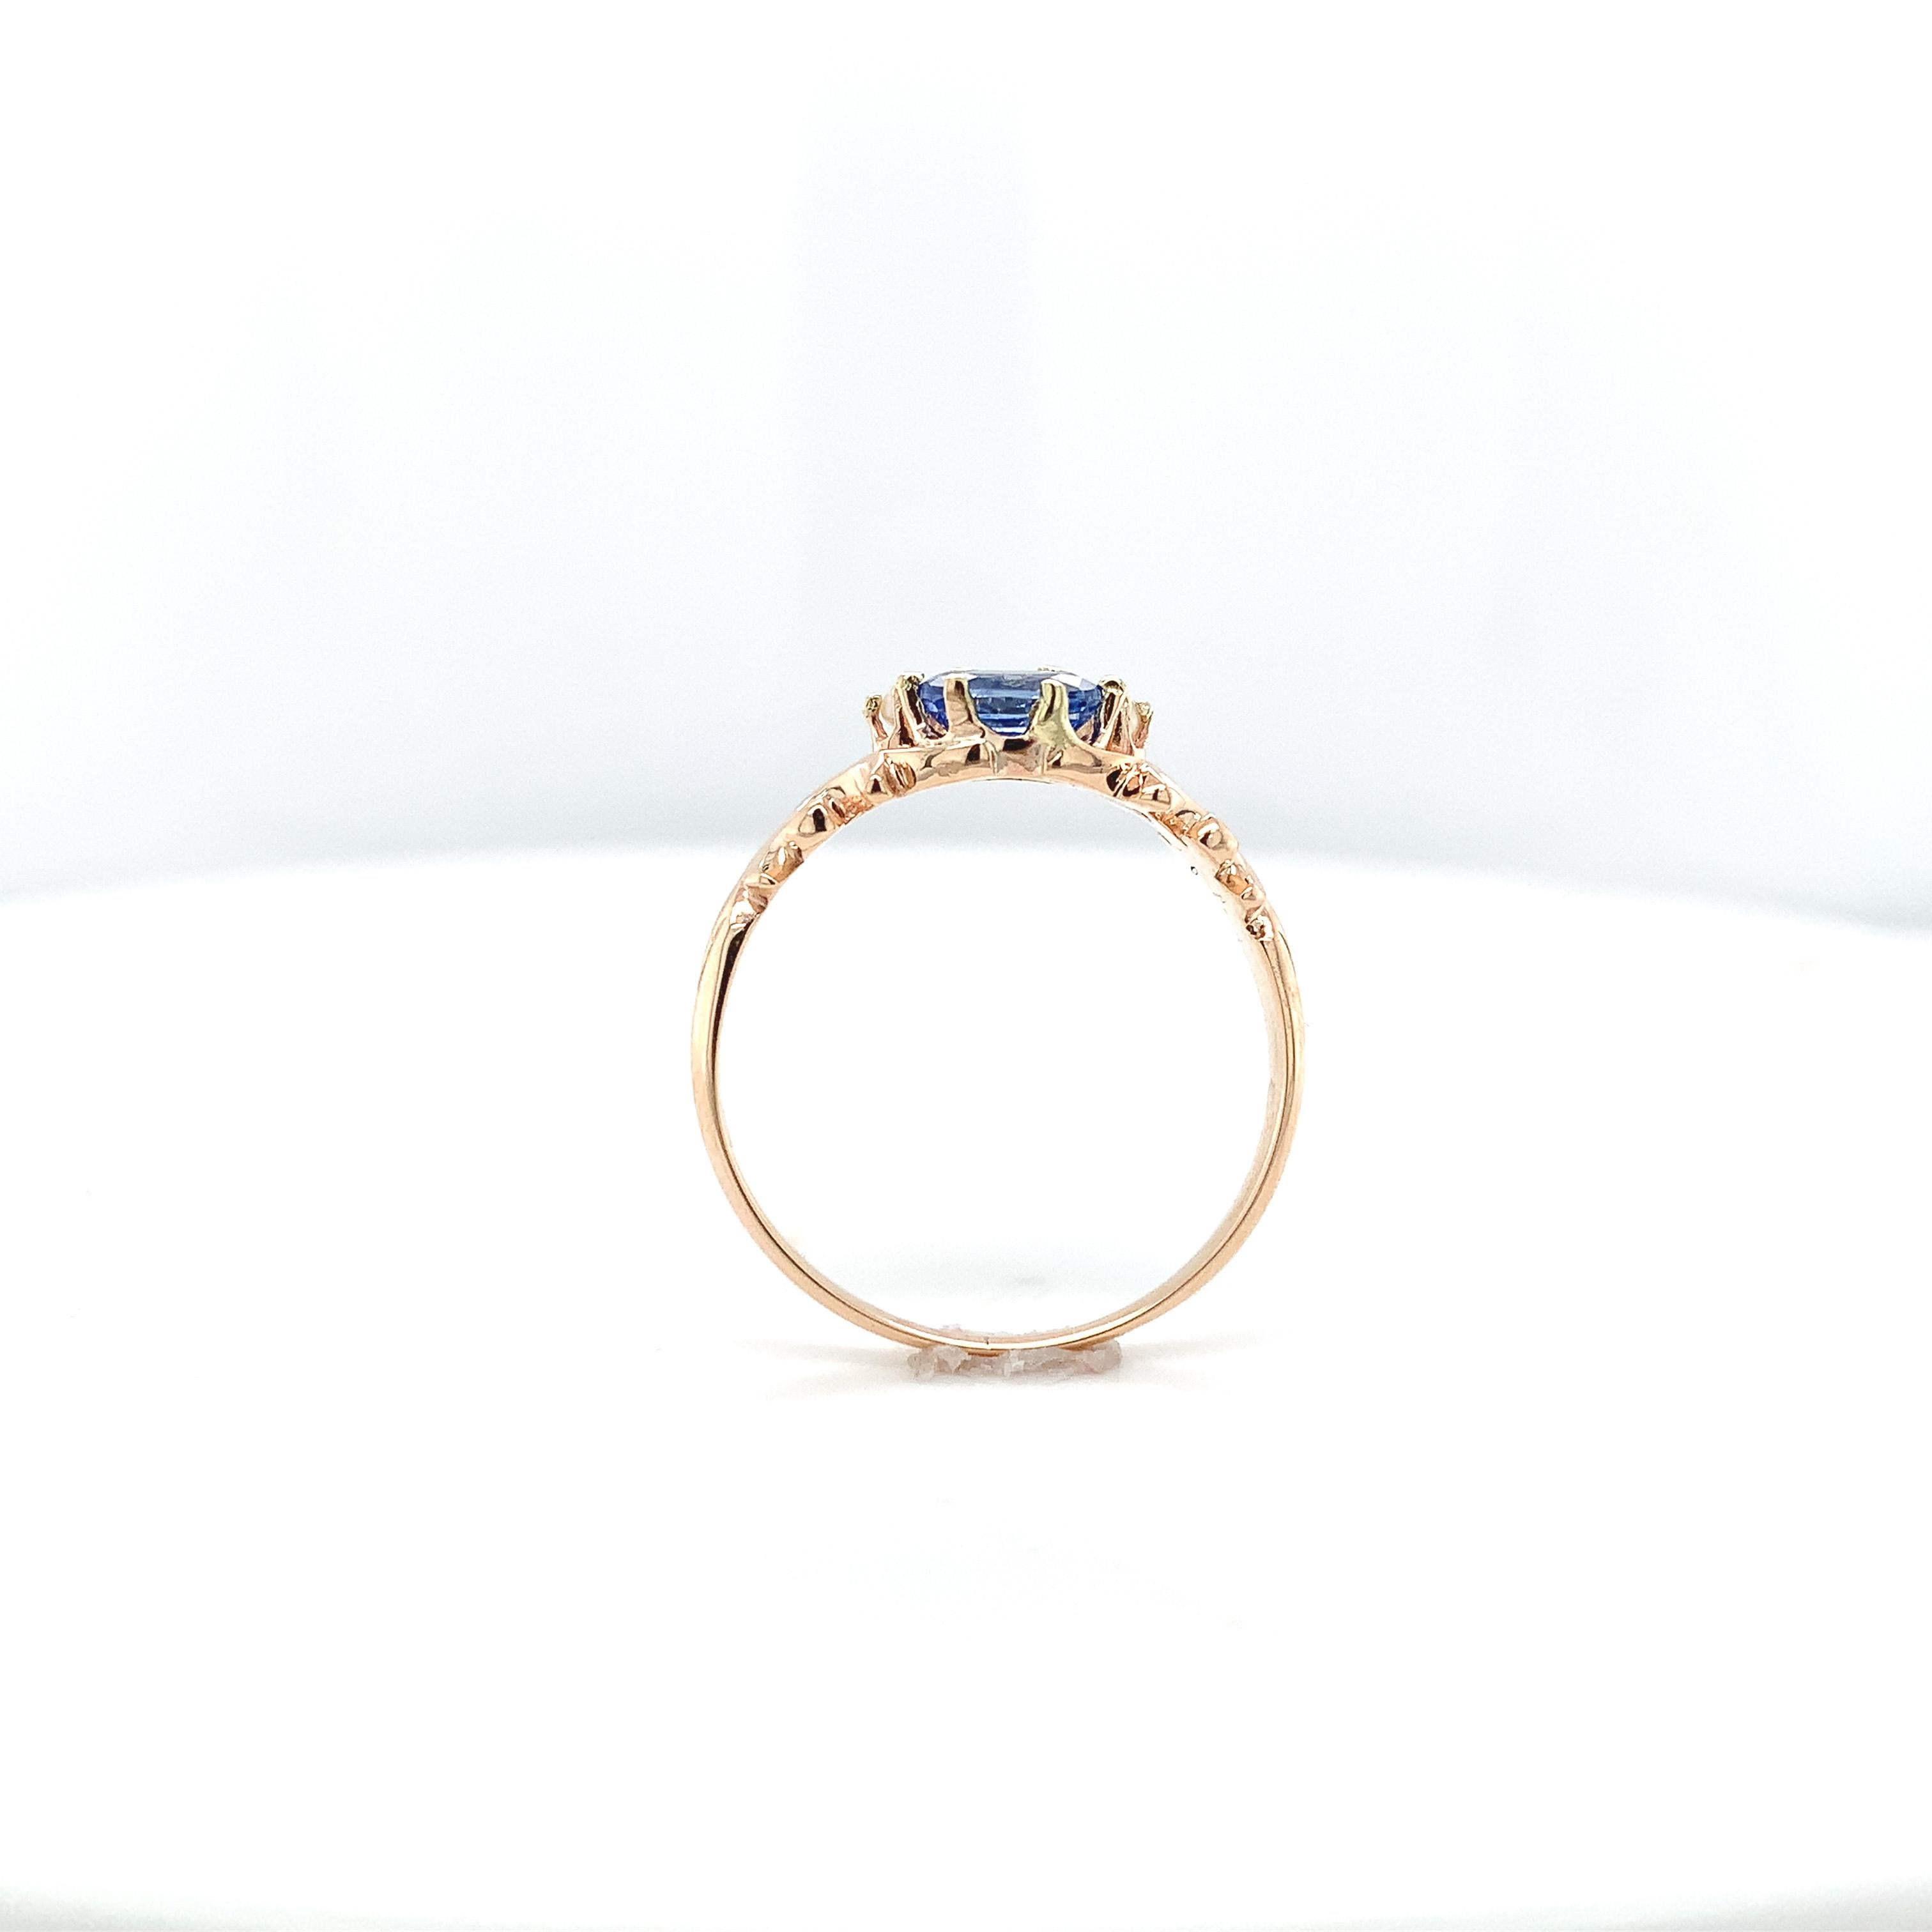 Viktorianischer Ring aus 10 Karat Roségold mit 2 ovalen blauen Saphiren.  Die Saphire wiegen insgesamt 1,14 Karat. Die Saphire sind mittel hell lavendelblau Ceylon Farbe und messen etwa 6mm x 4mm. Es gibt 2 kleine Akzente aus Saatperlen. Der Ring